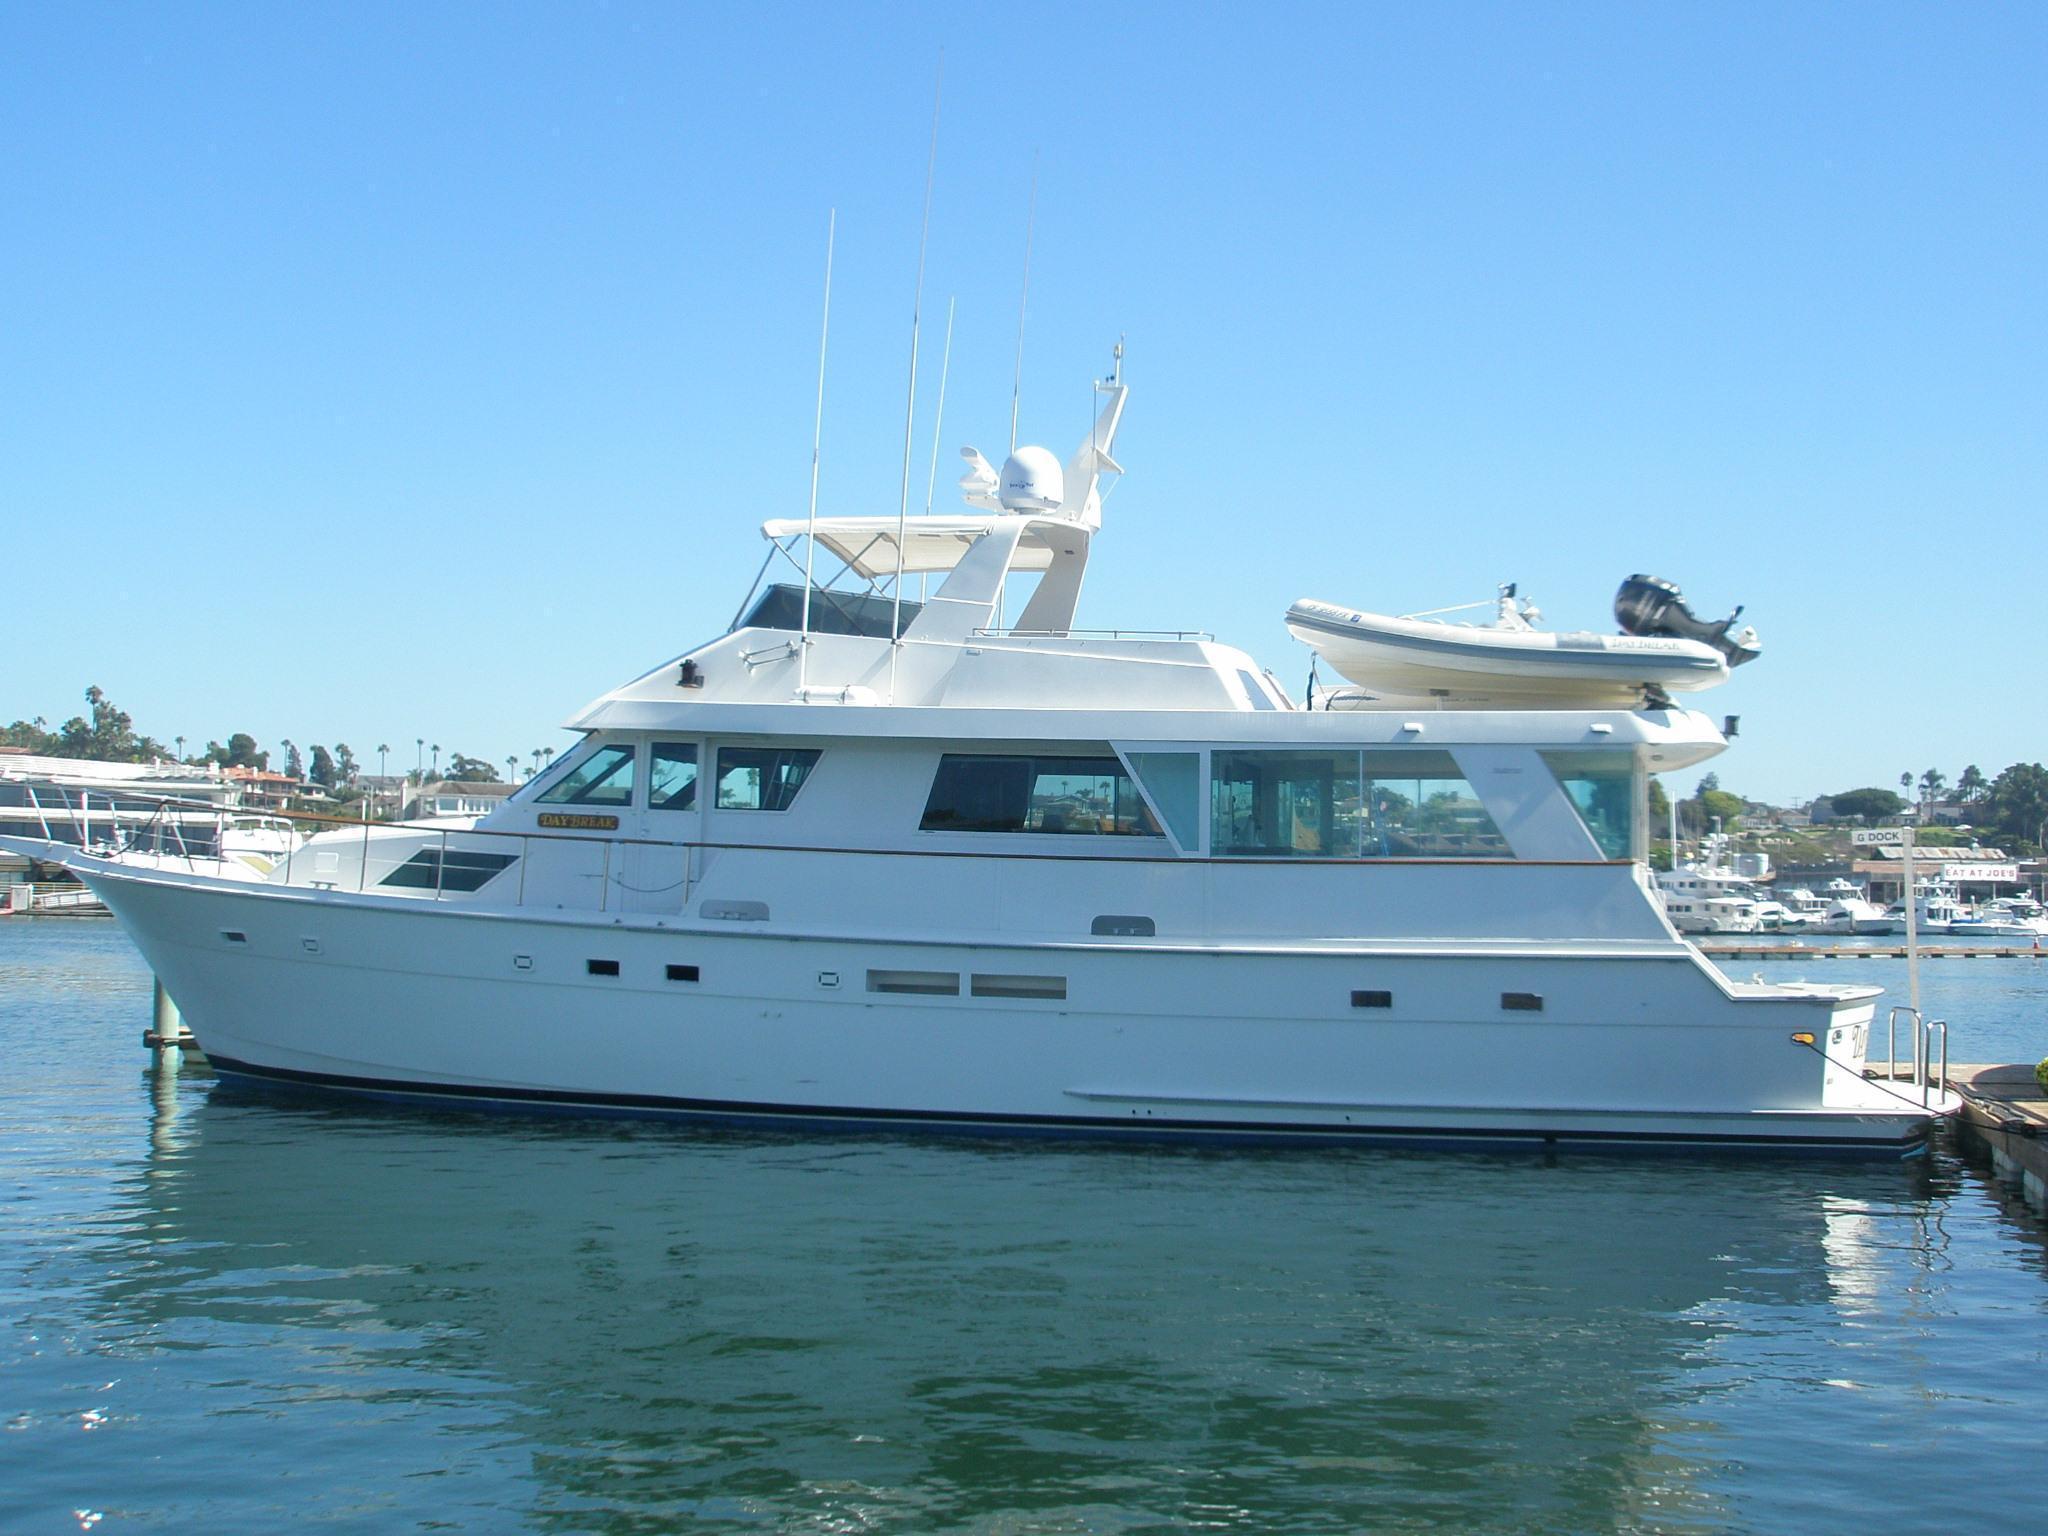 Hatteras Motor Yacht, Marina del Rey